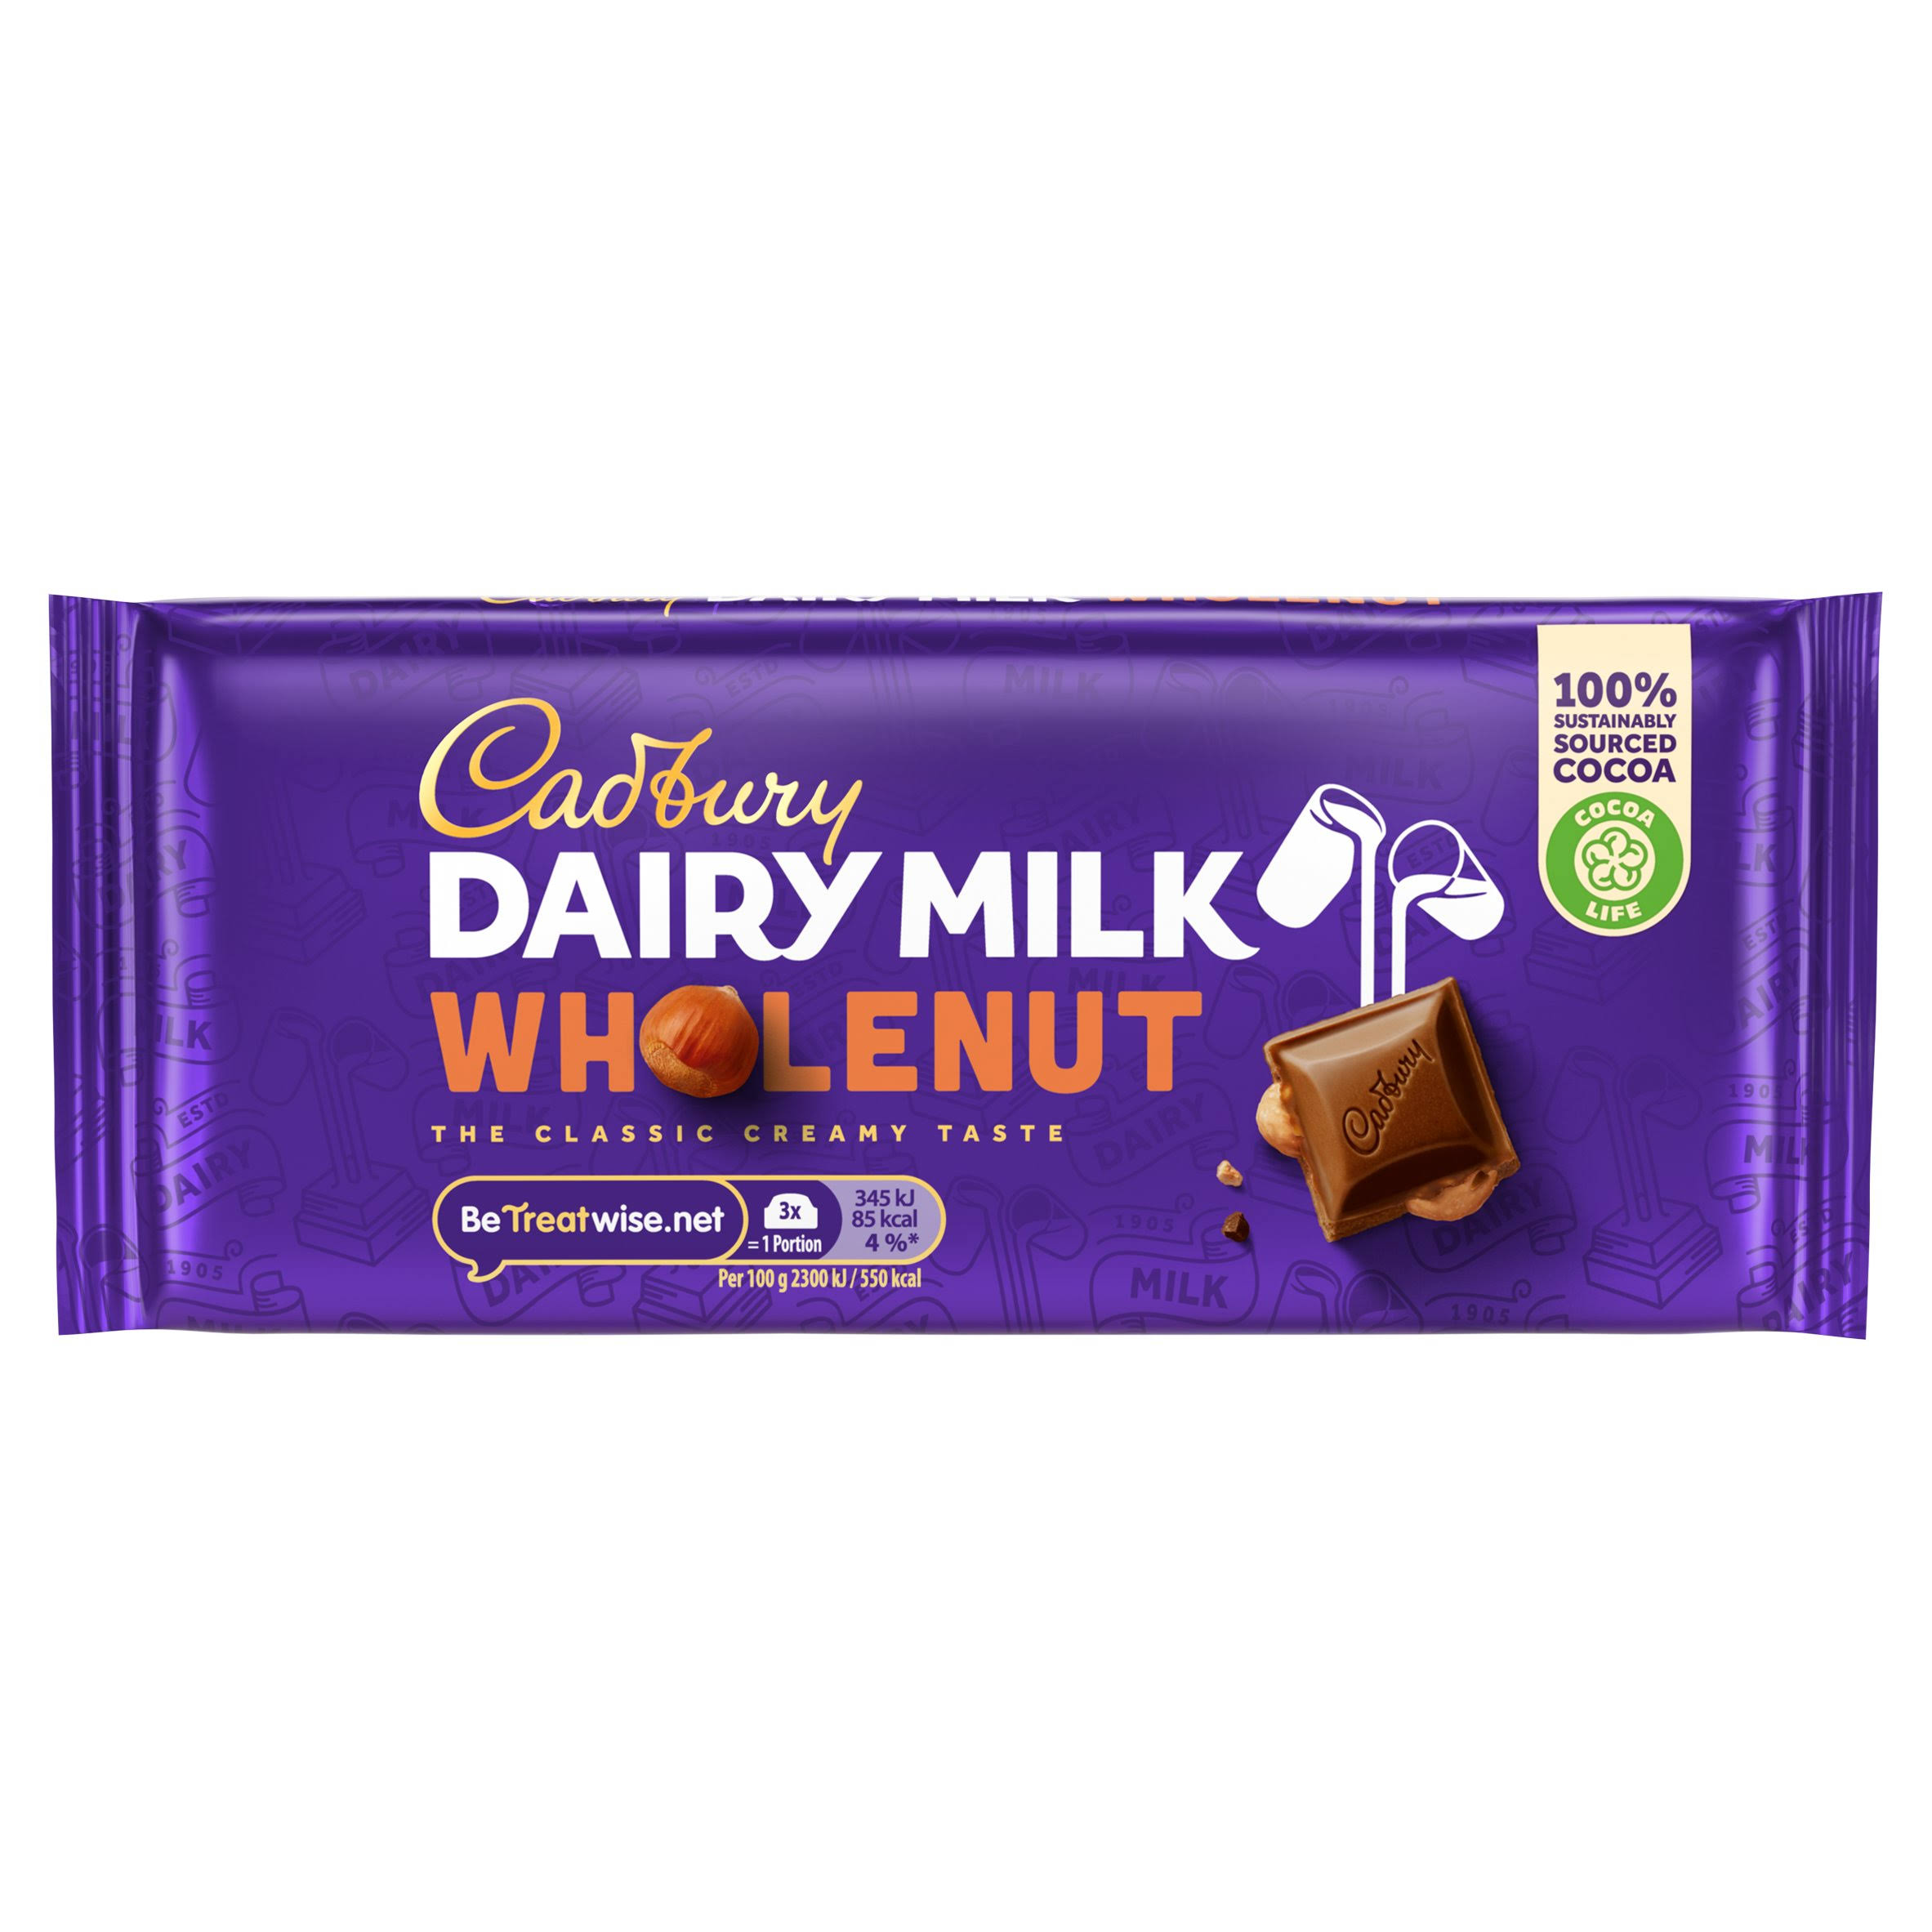 Cadbury Dairy Milk Chocolate Bar - Whole Nut, 120g